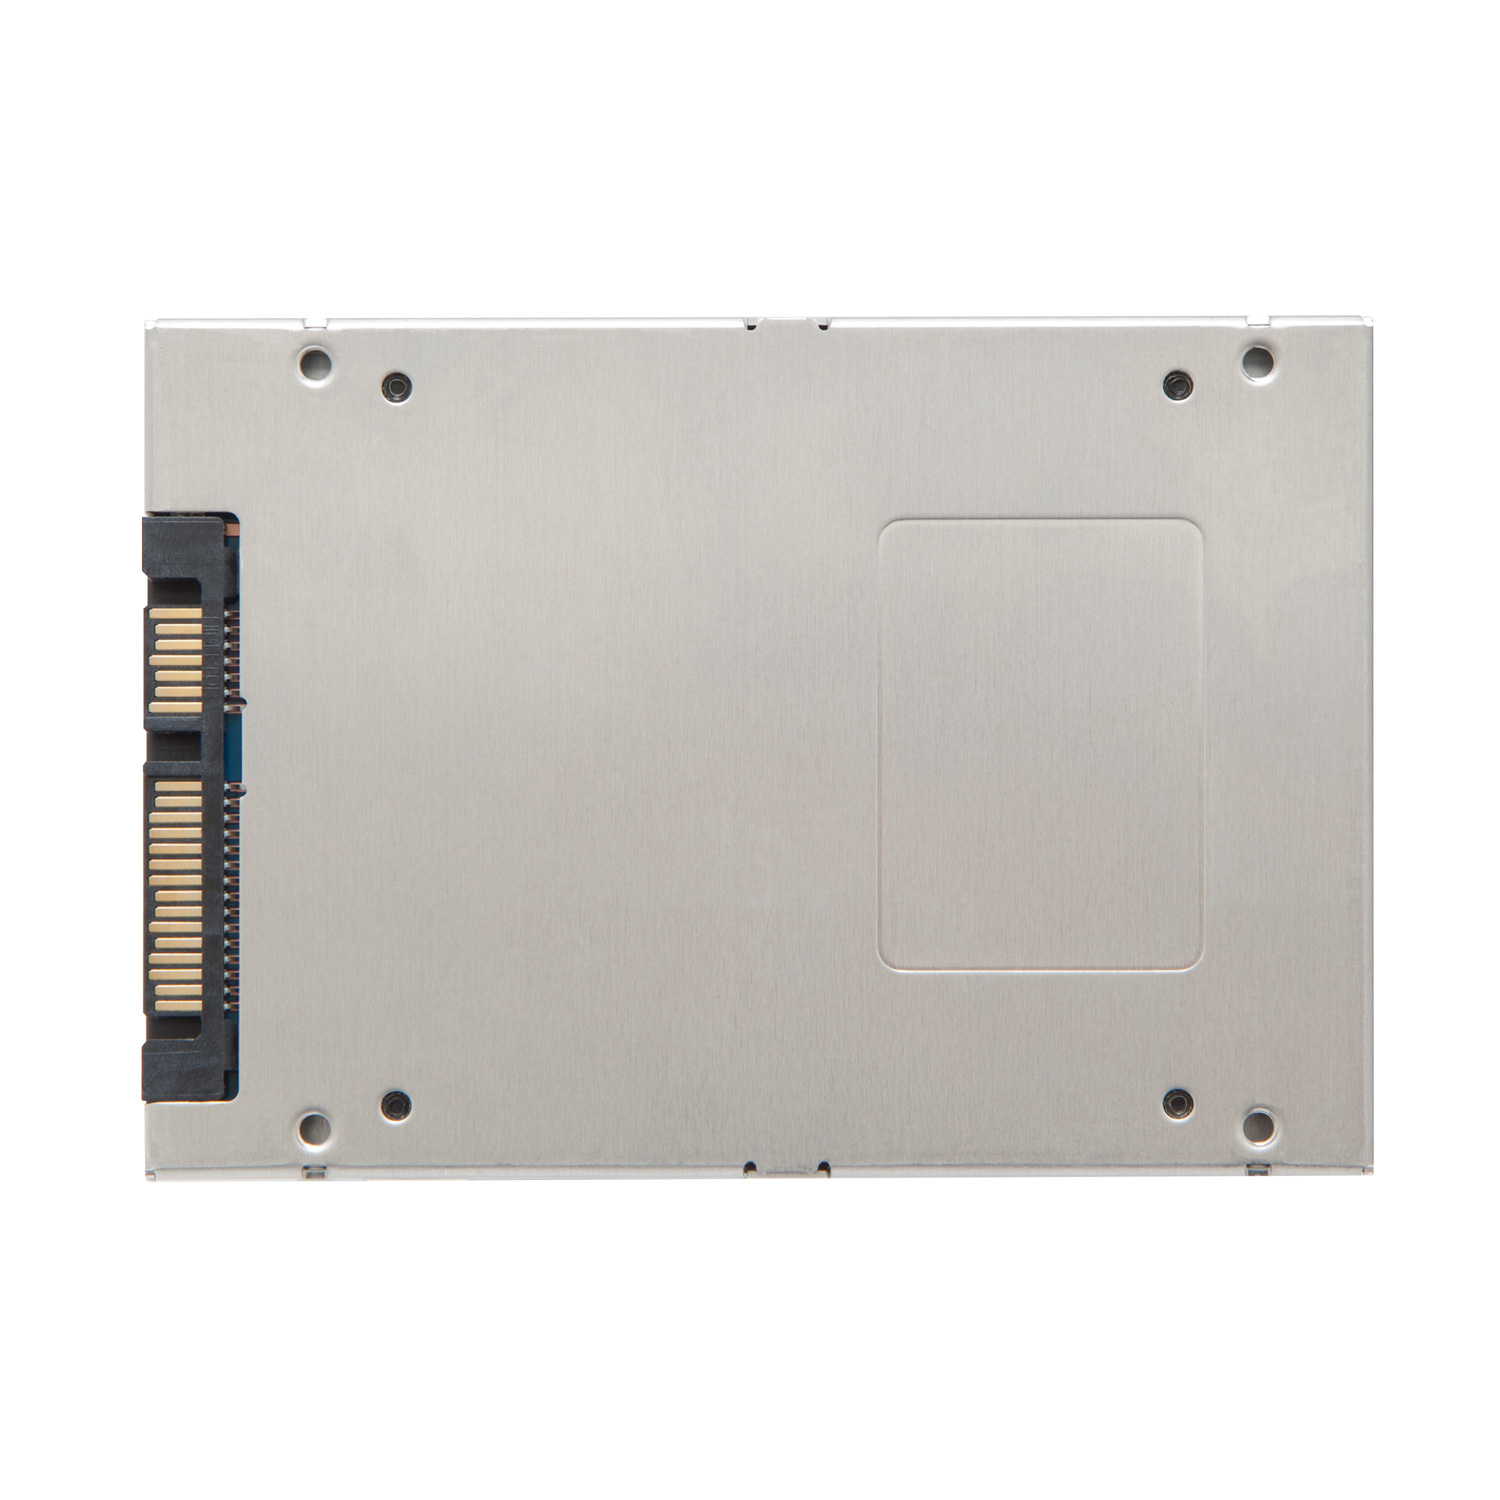 Disque dur SSD Kingston A400 240 Go 2.5 pouces 7mm Serial ATA 6Gb/s, Futur Réunion informatique